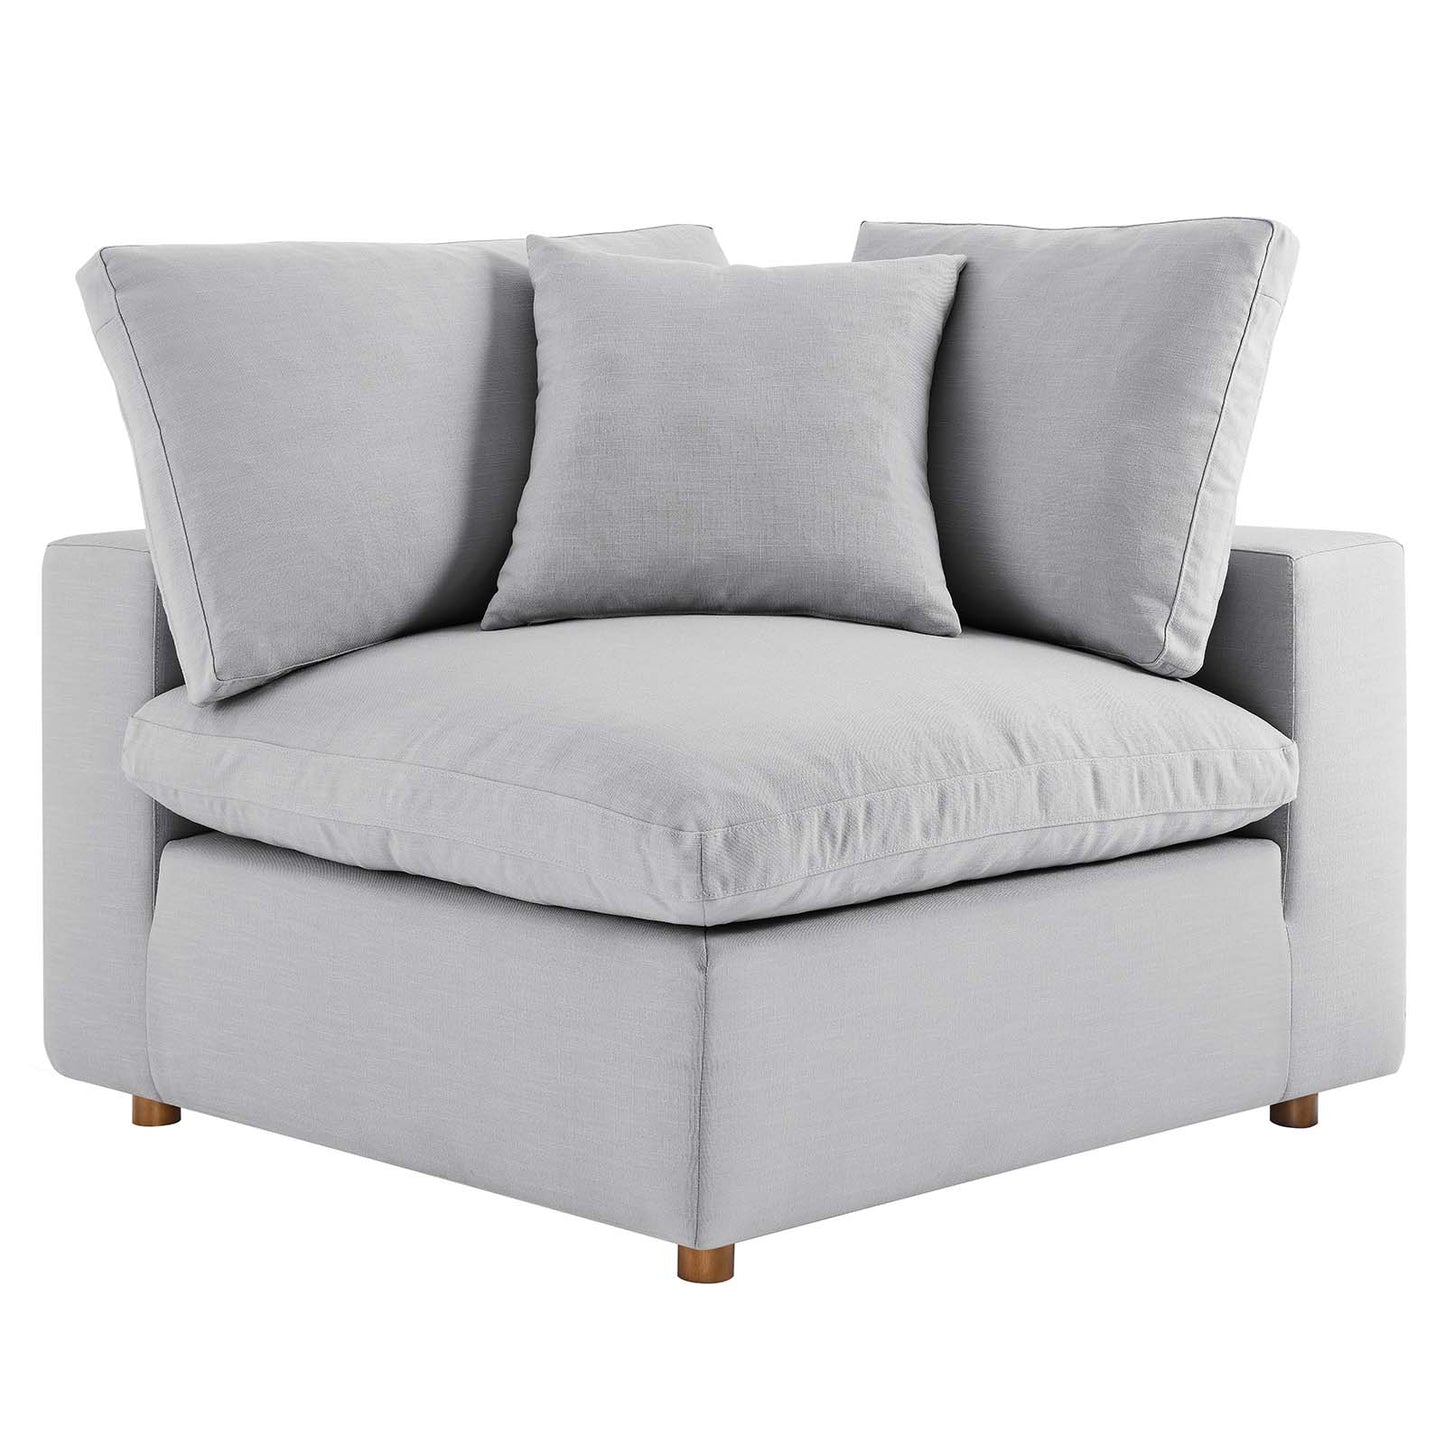 Commix Down Filled Overstuffed 2 Piece Sectional Sofa Set Light Gray EEI-3354-LGR